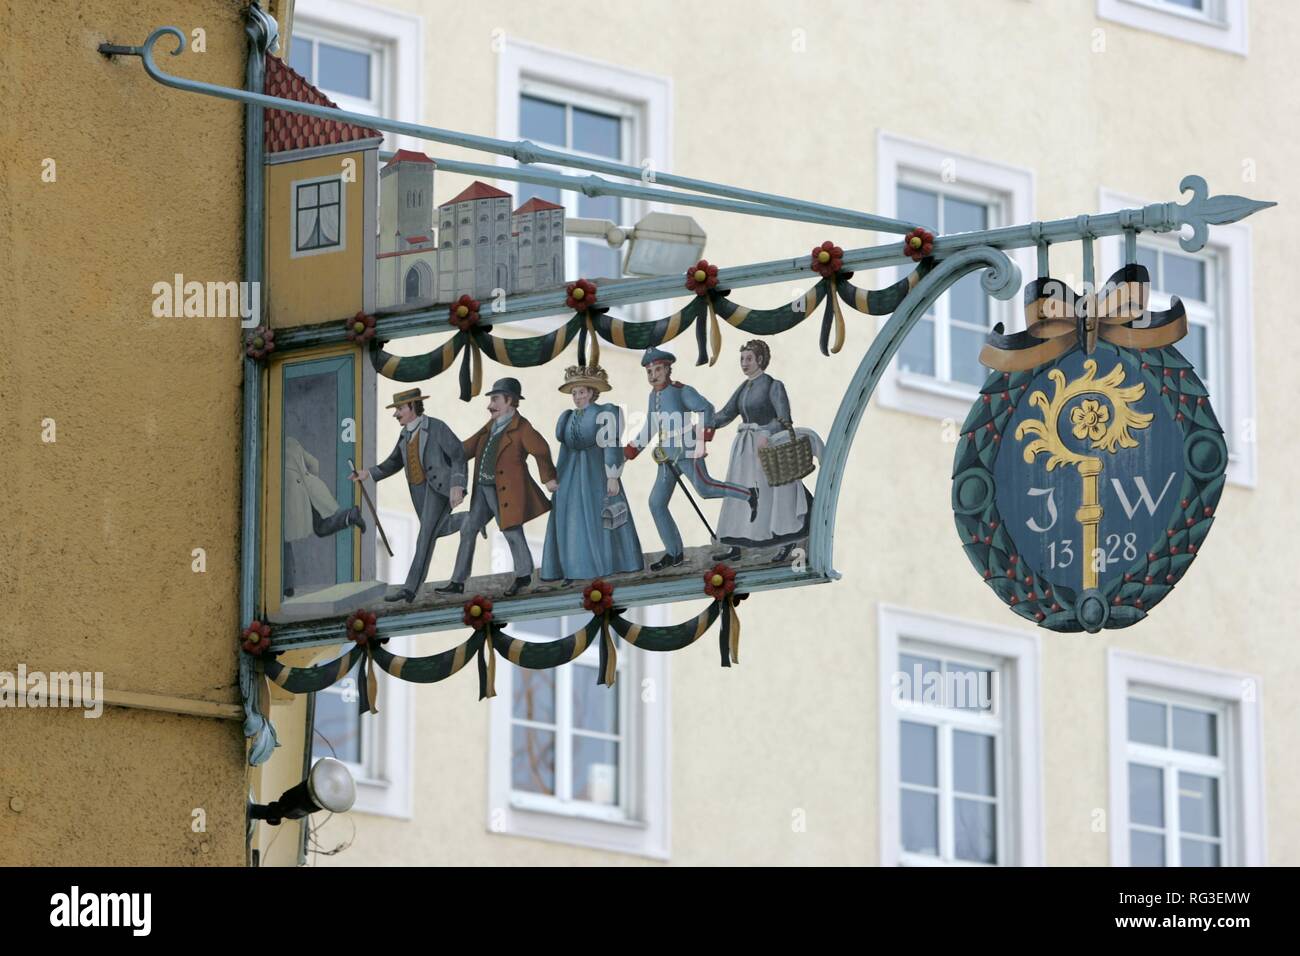 DEU, Germania, Monaco di Baviera : segno storico della Isator Gasthof, ristorante, pub. Foto Stock